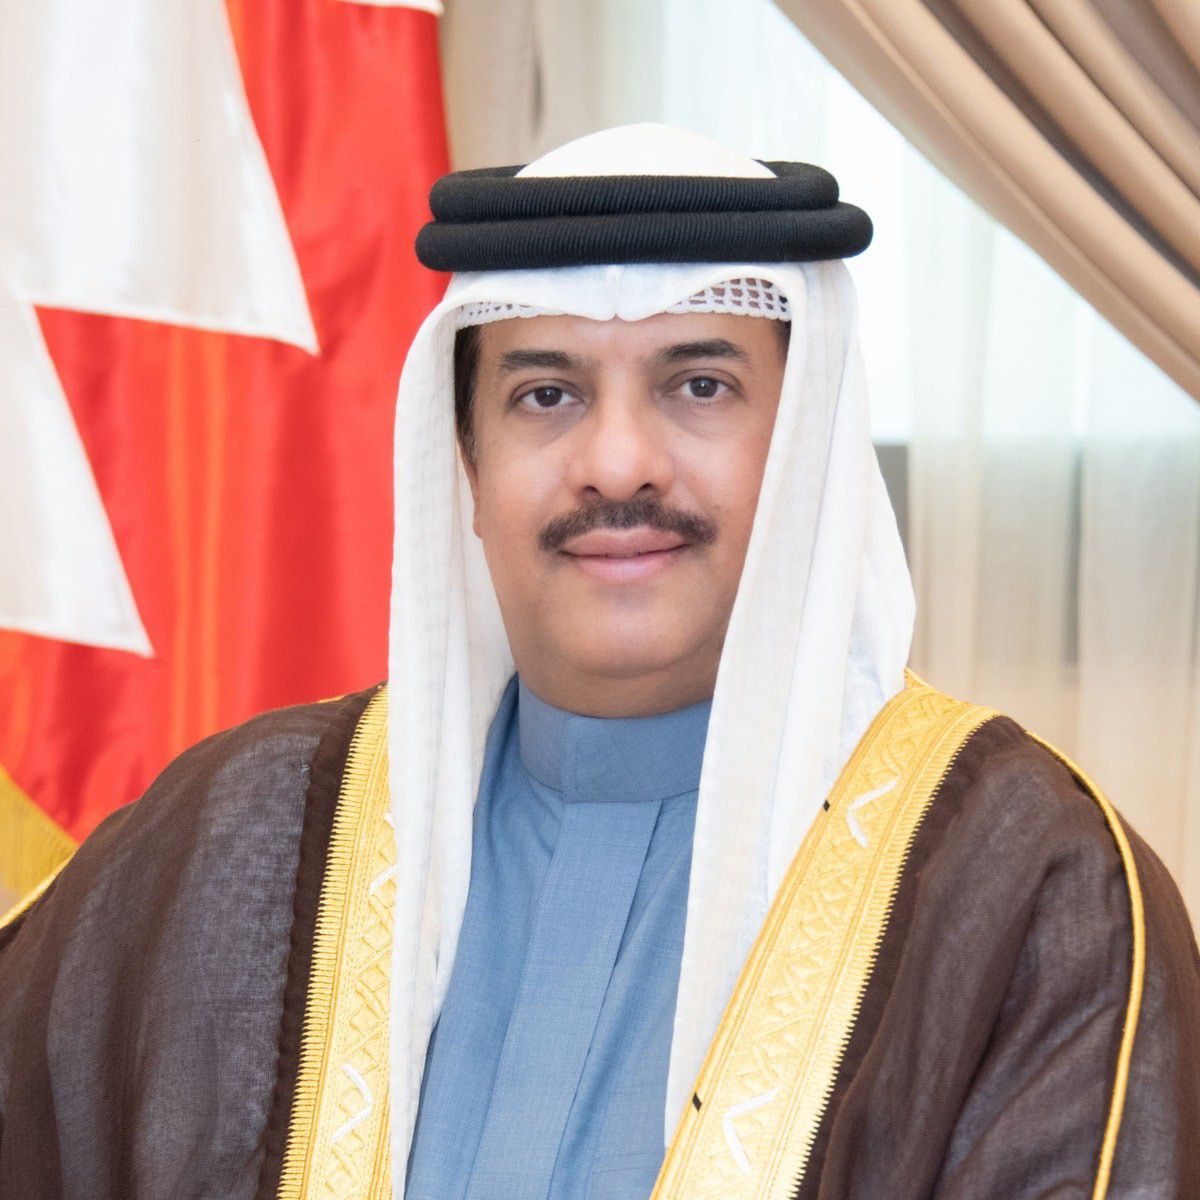 إحراج شديد للسفير البحريني بعد مداخلة حقوقية في عشاء أوروبي